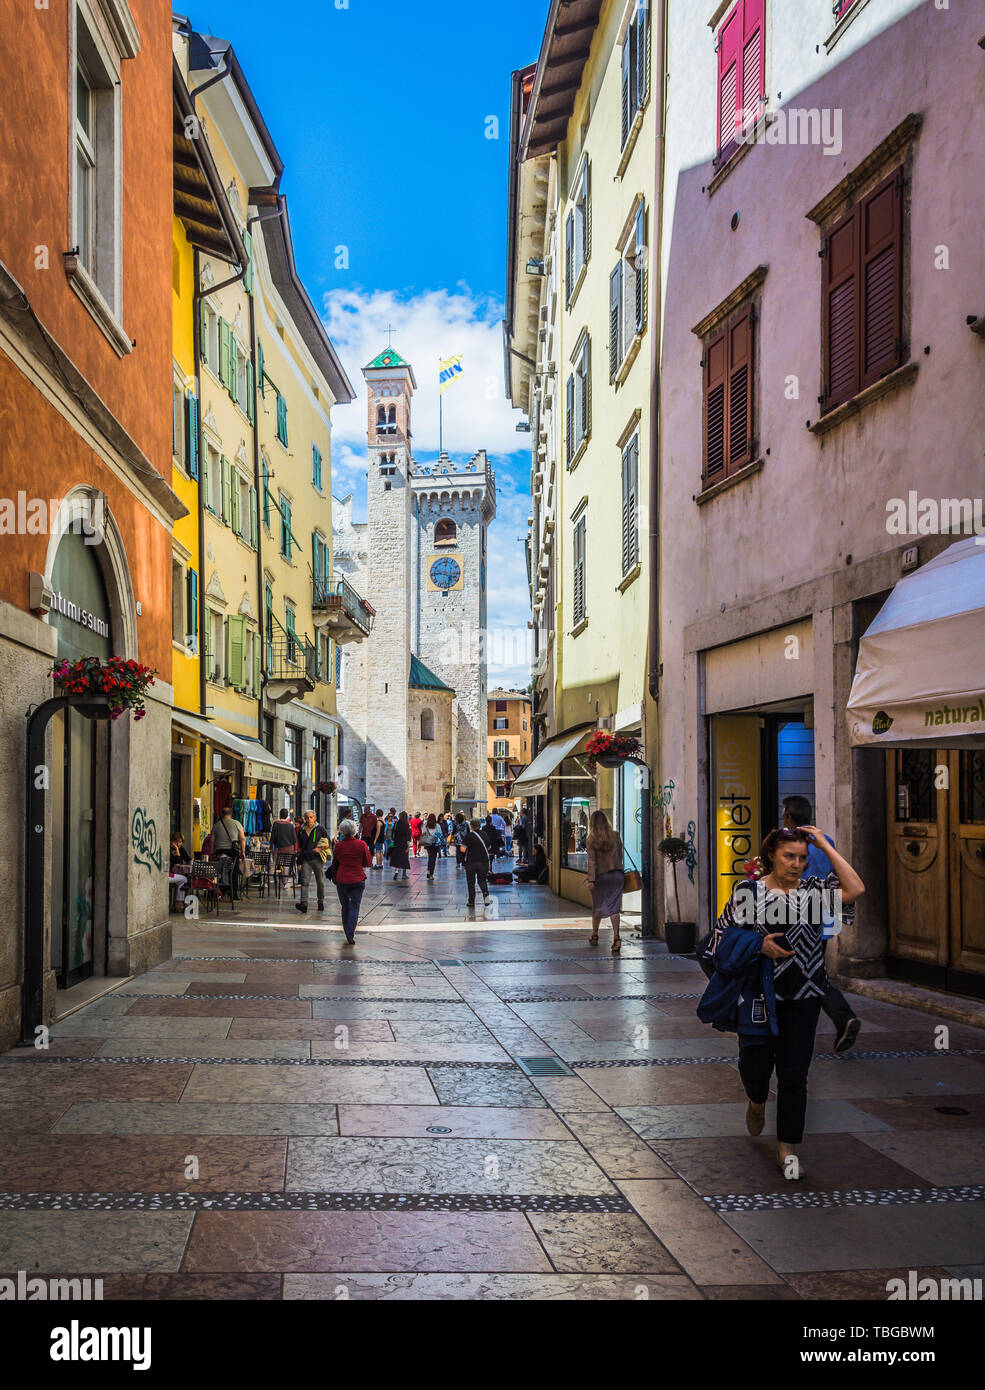 Eindrucksvoller Blick auf das historische Zentrum der Stadt Trient mit seinen antiken Gebäuden - Stadtbild von Trient, Trentino-Südtirol - Norditalien Stockfoto